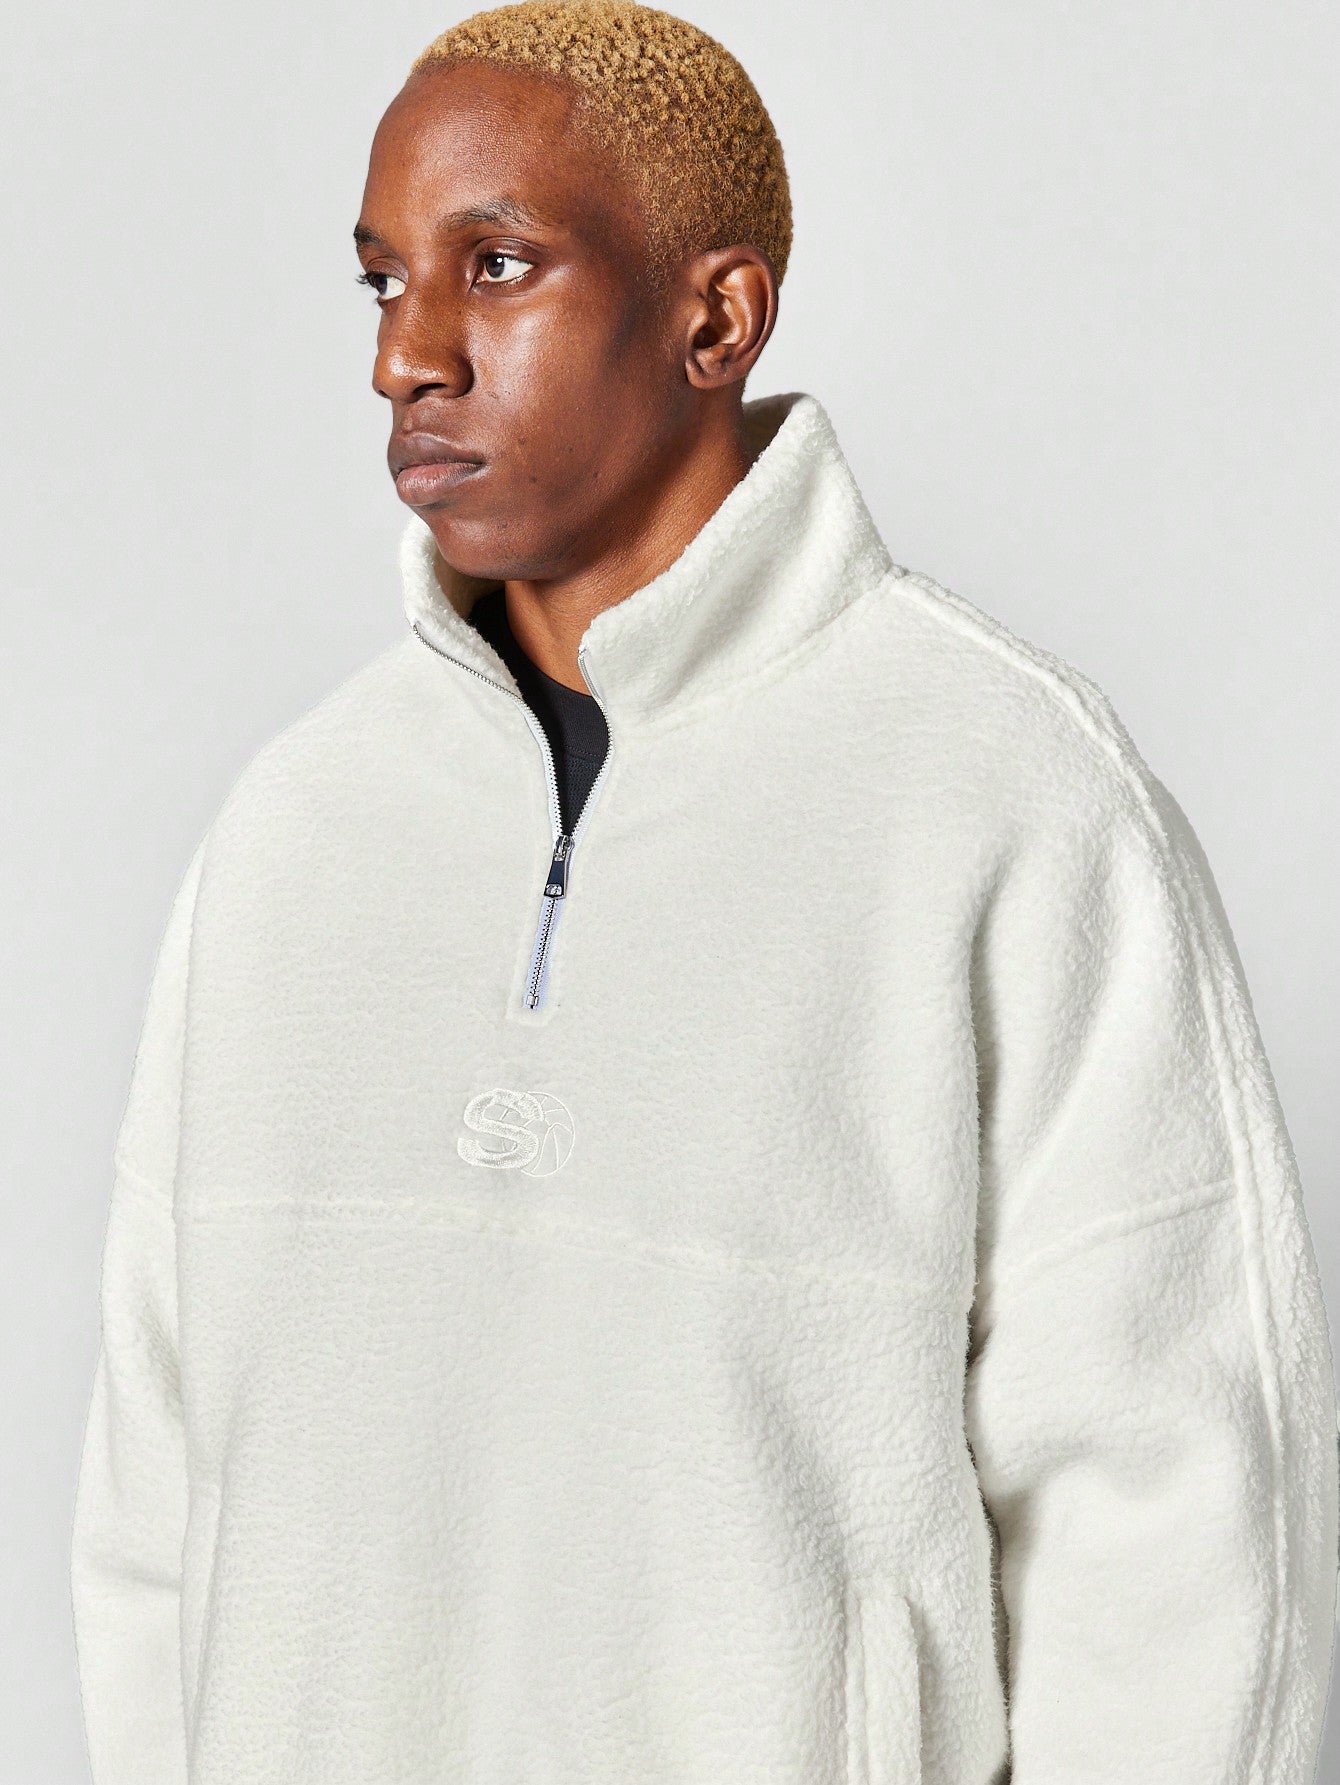 Oversized Fleece Funnel Neck Sweatshirt With Front Embroidery